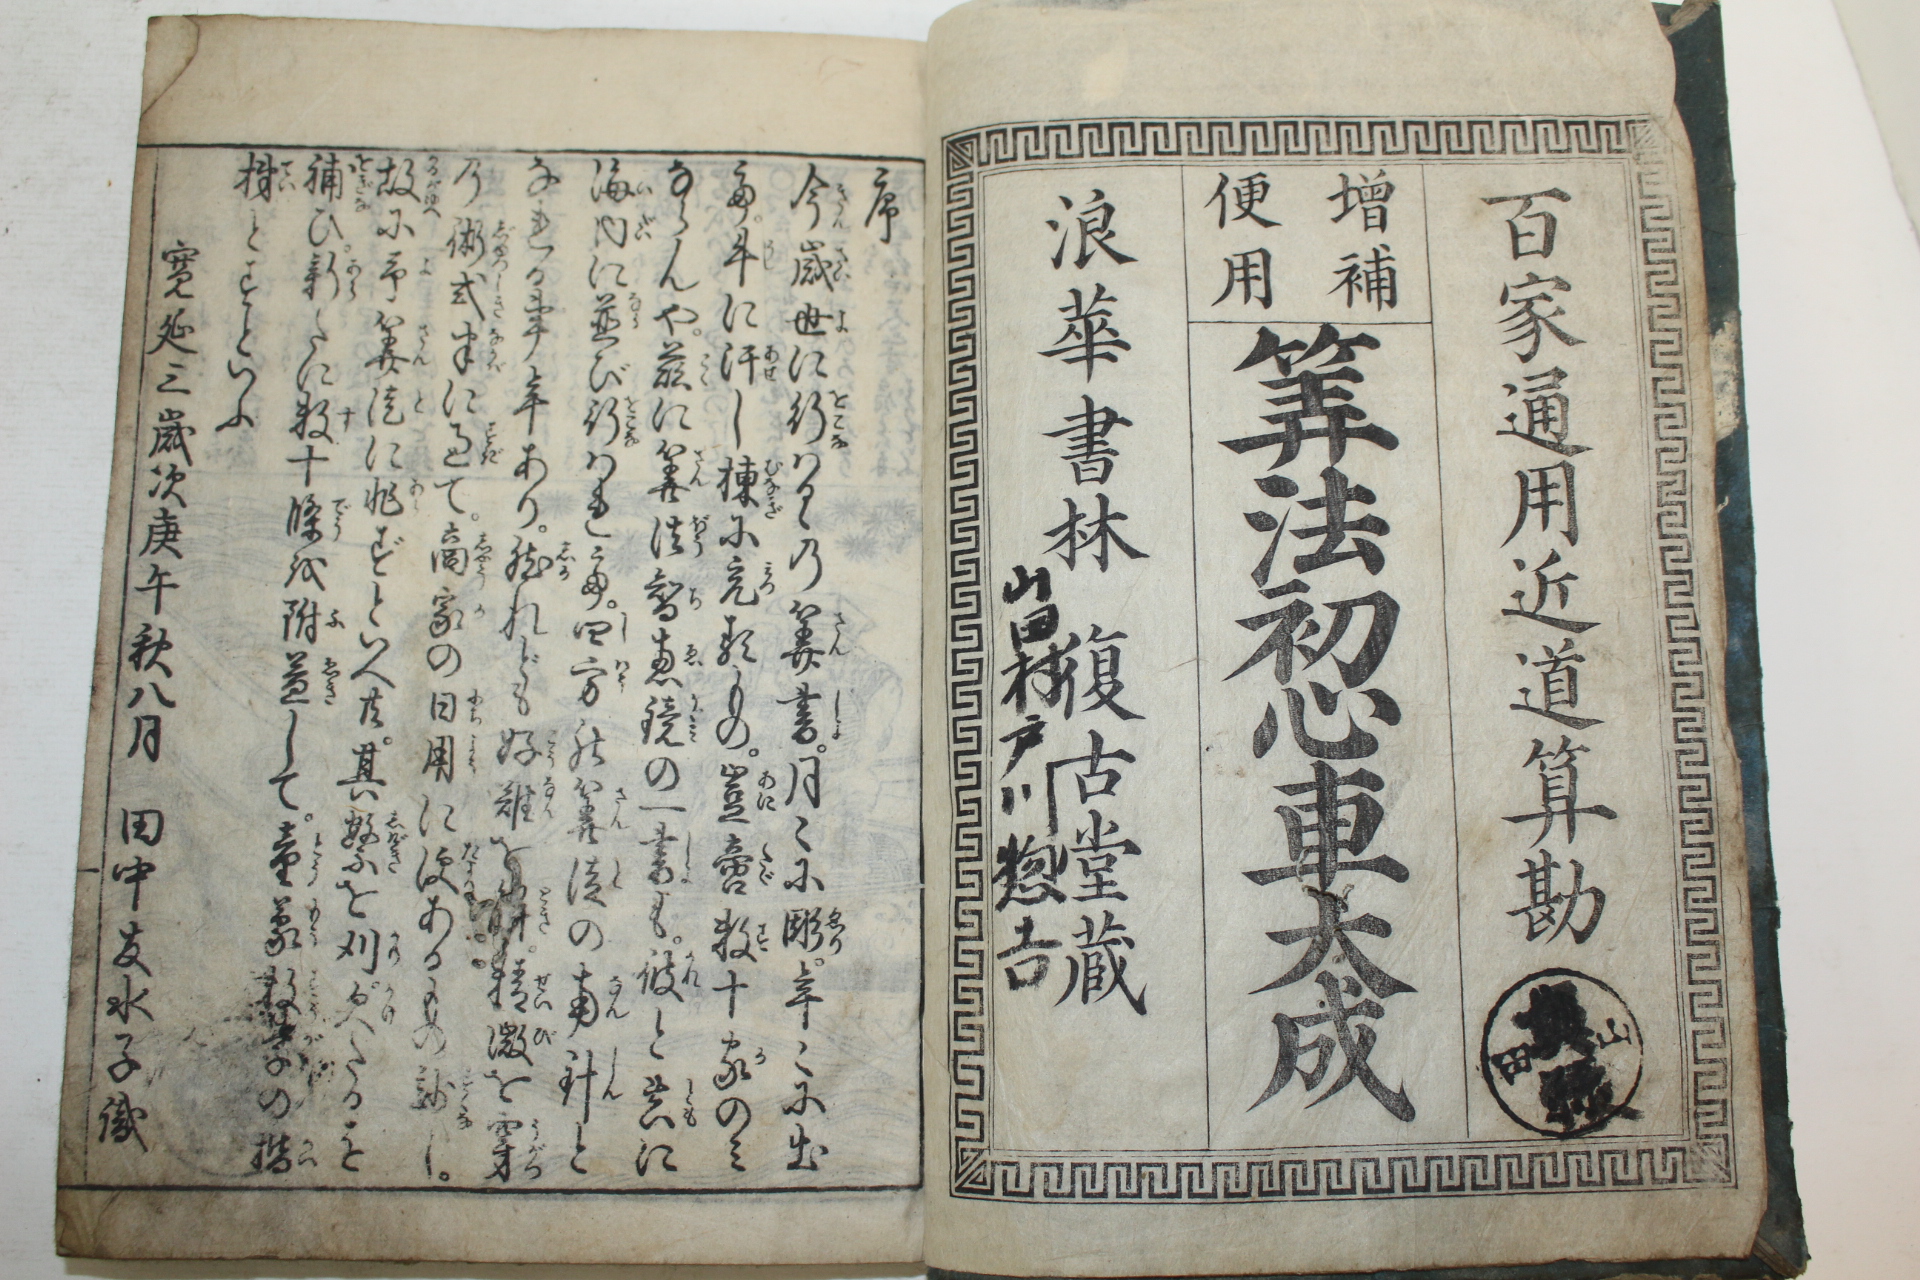 1797년(寬政9年) 일본목판본 산법초심차대성(算法初心車大成) 1책완질